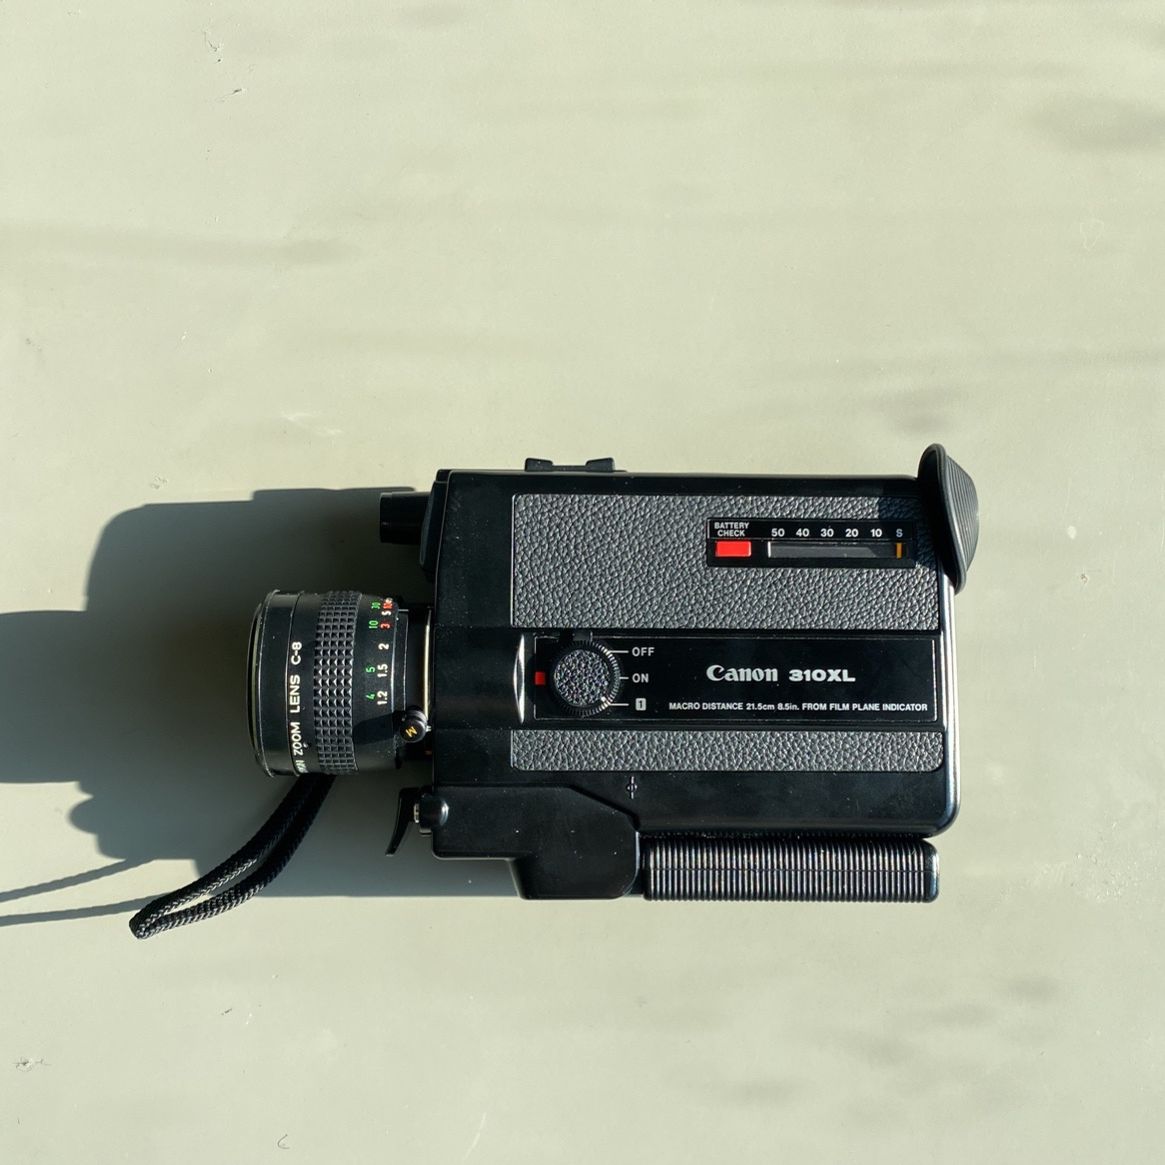 Canon 310XL Super 8 Film Camera